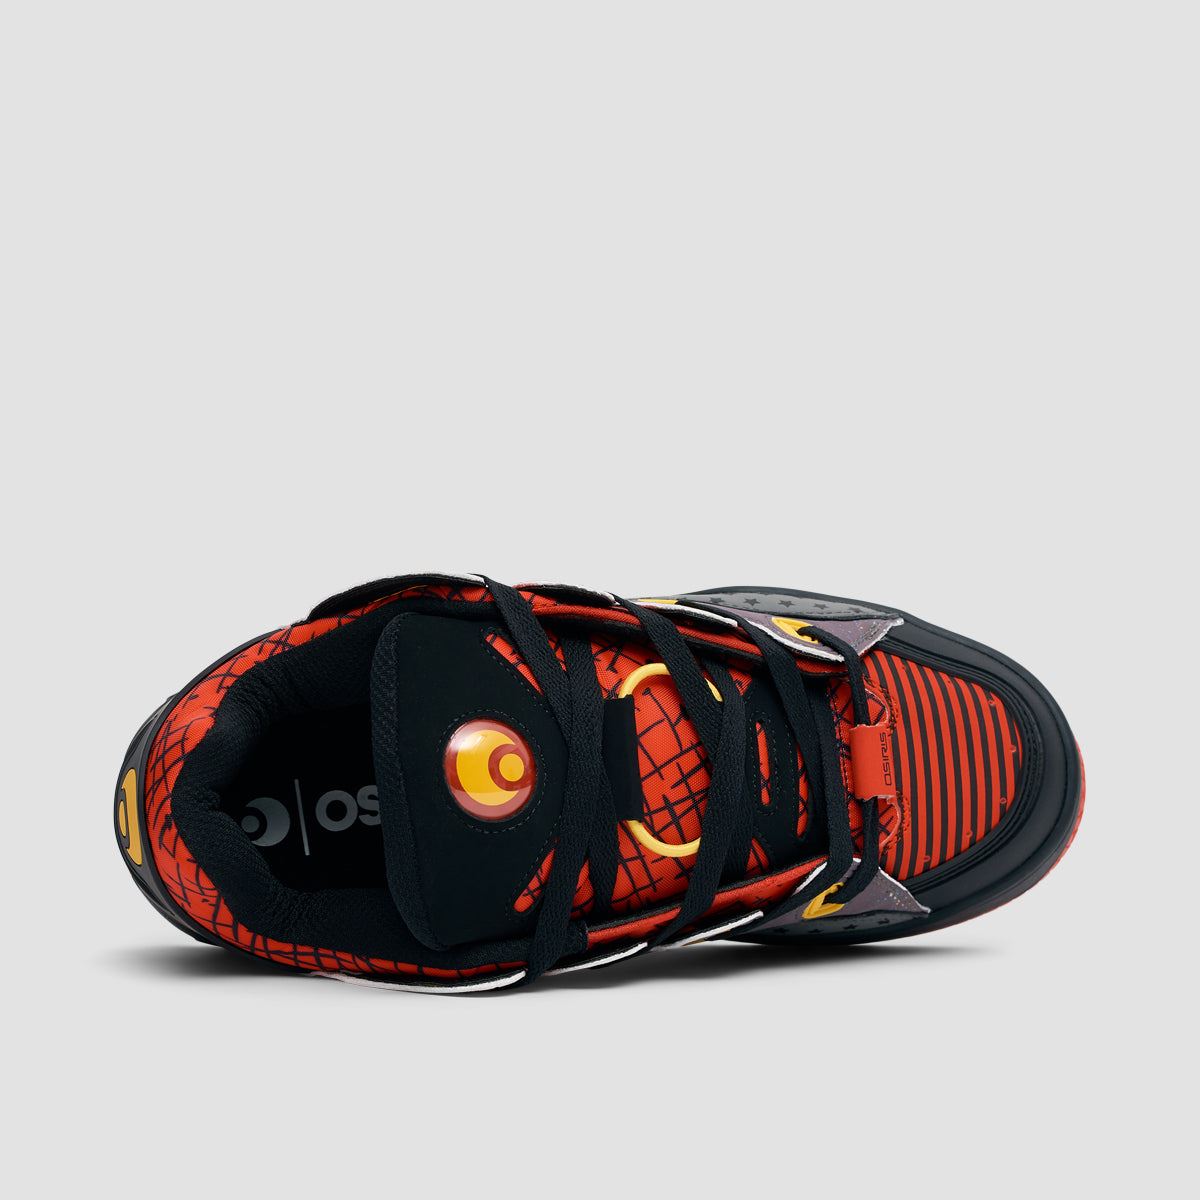 Osiris D3 OG Shoes - Red/Black/Bomber